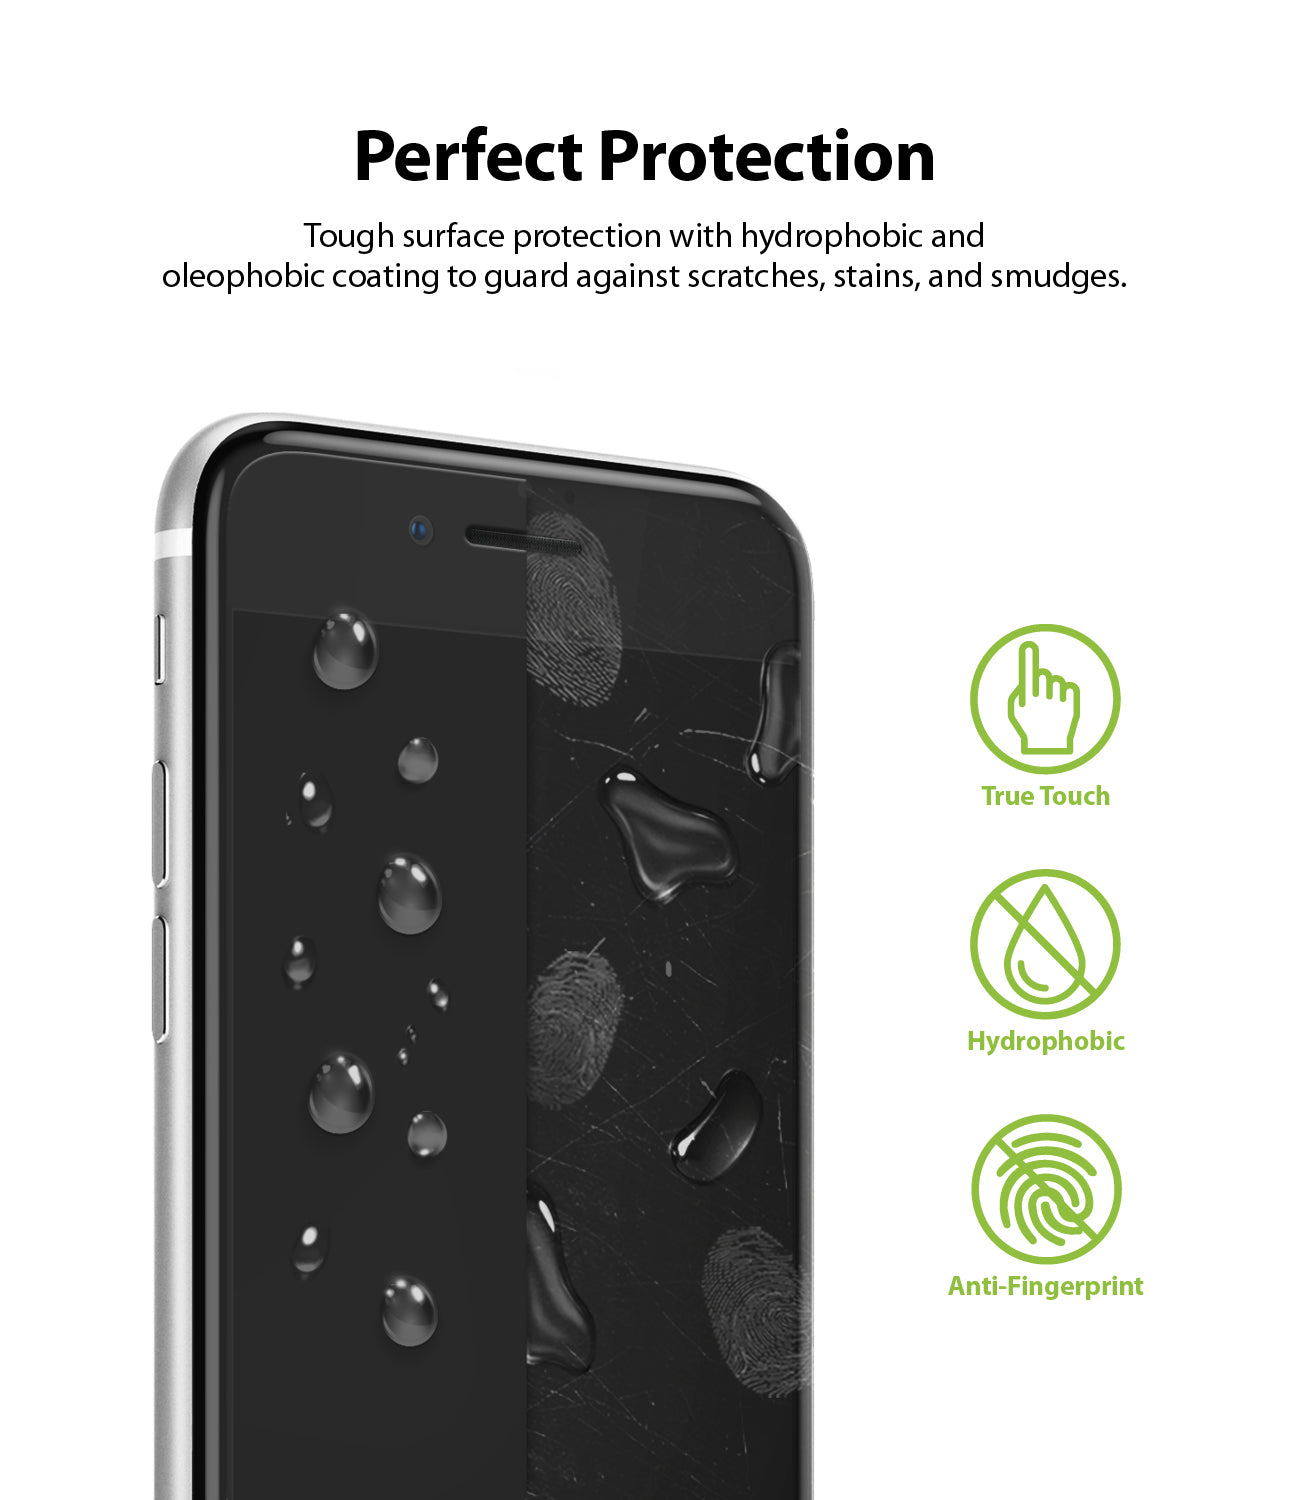 Película protectora para iPhone 8 y iPhone 7